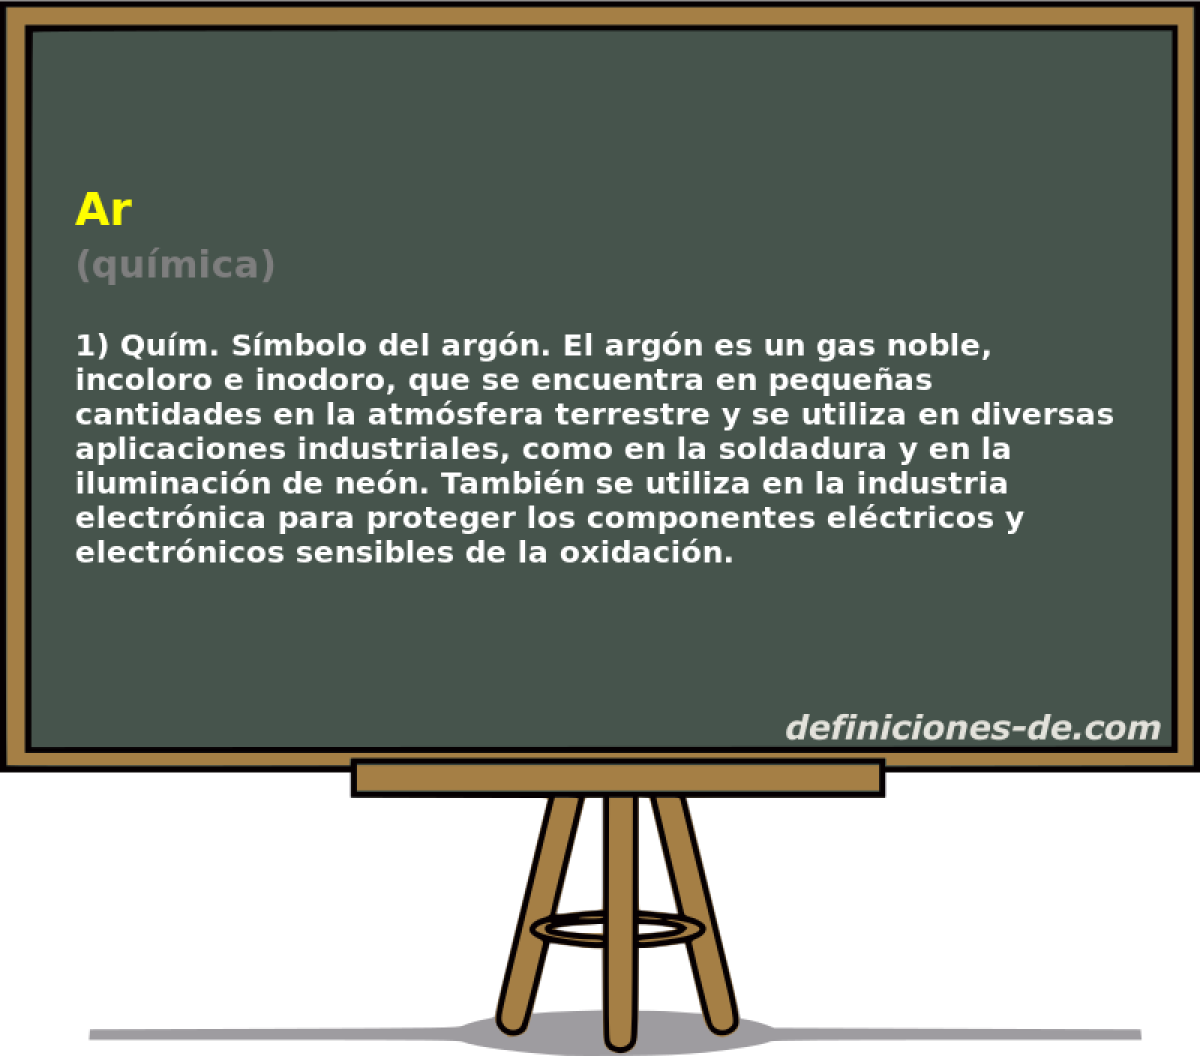 Ar (qumica)